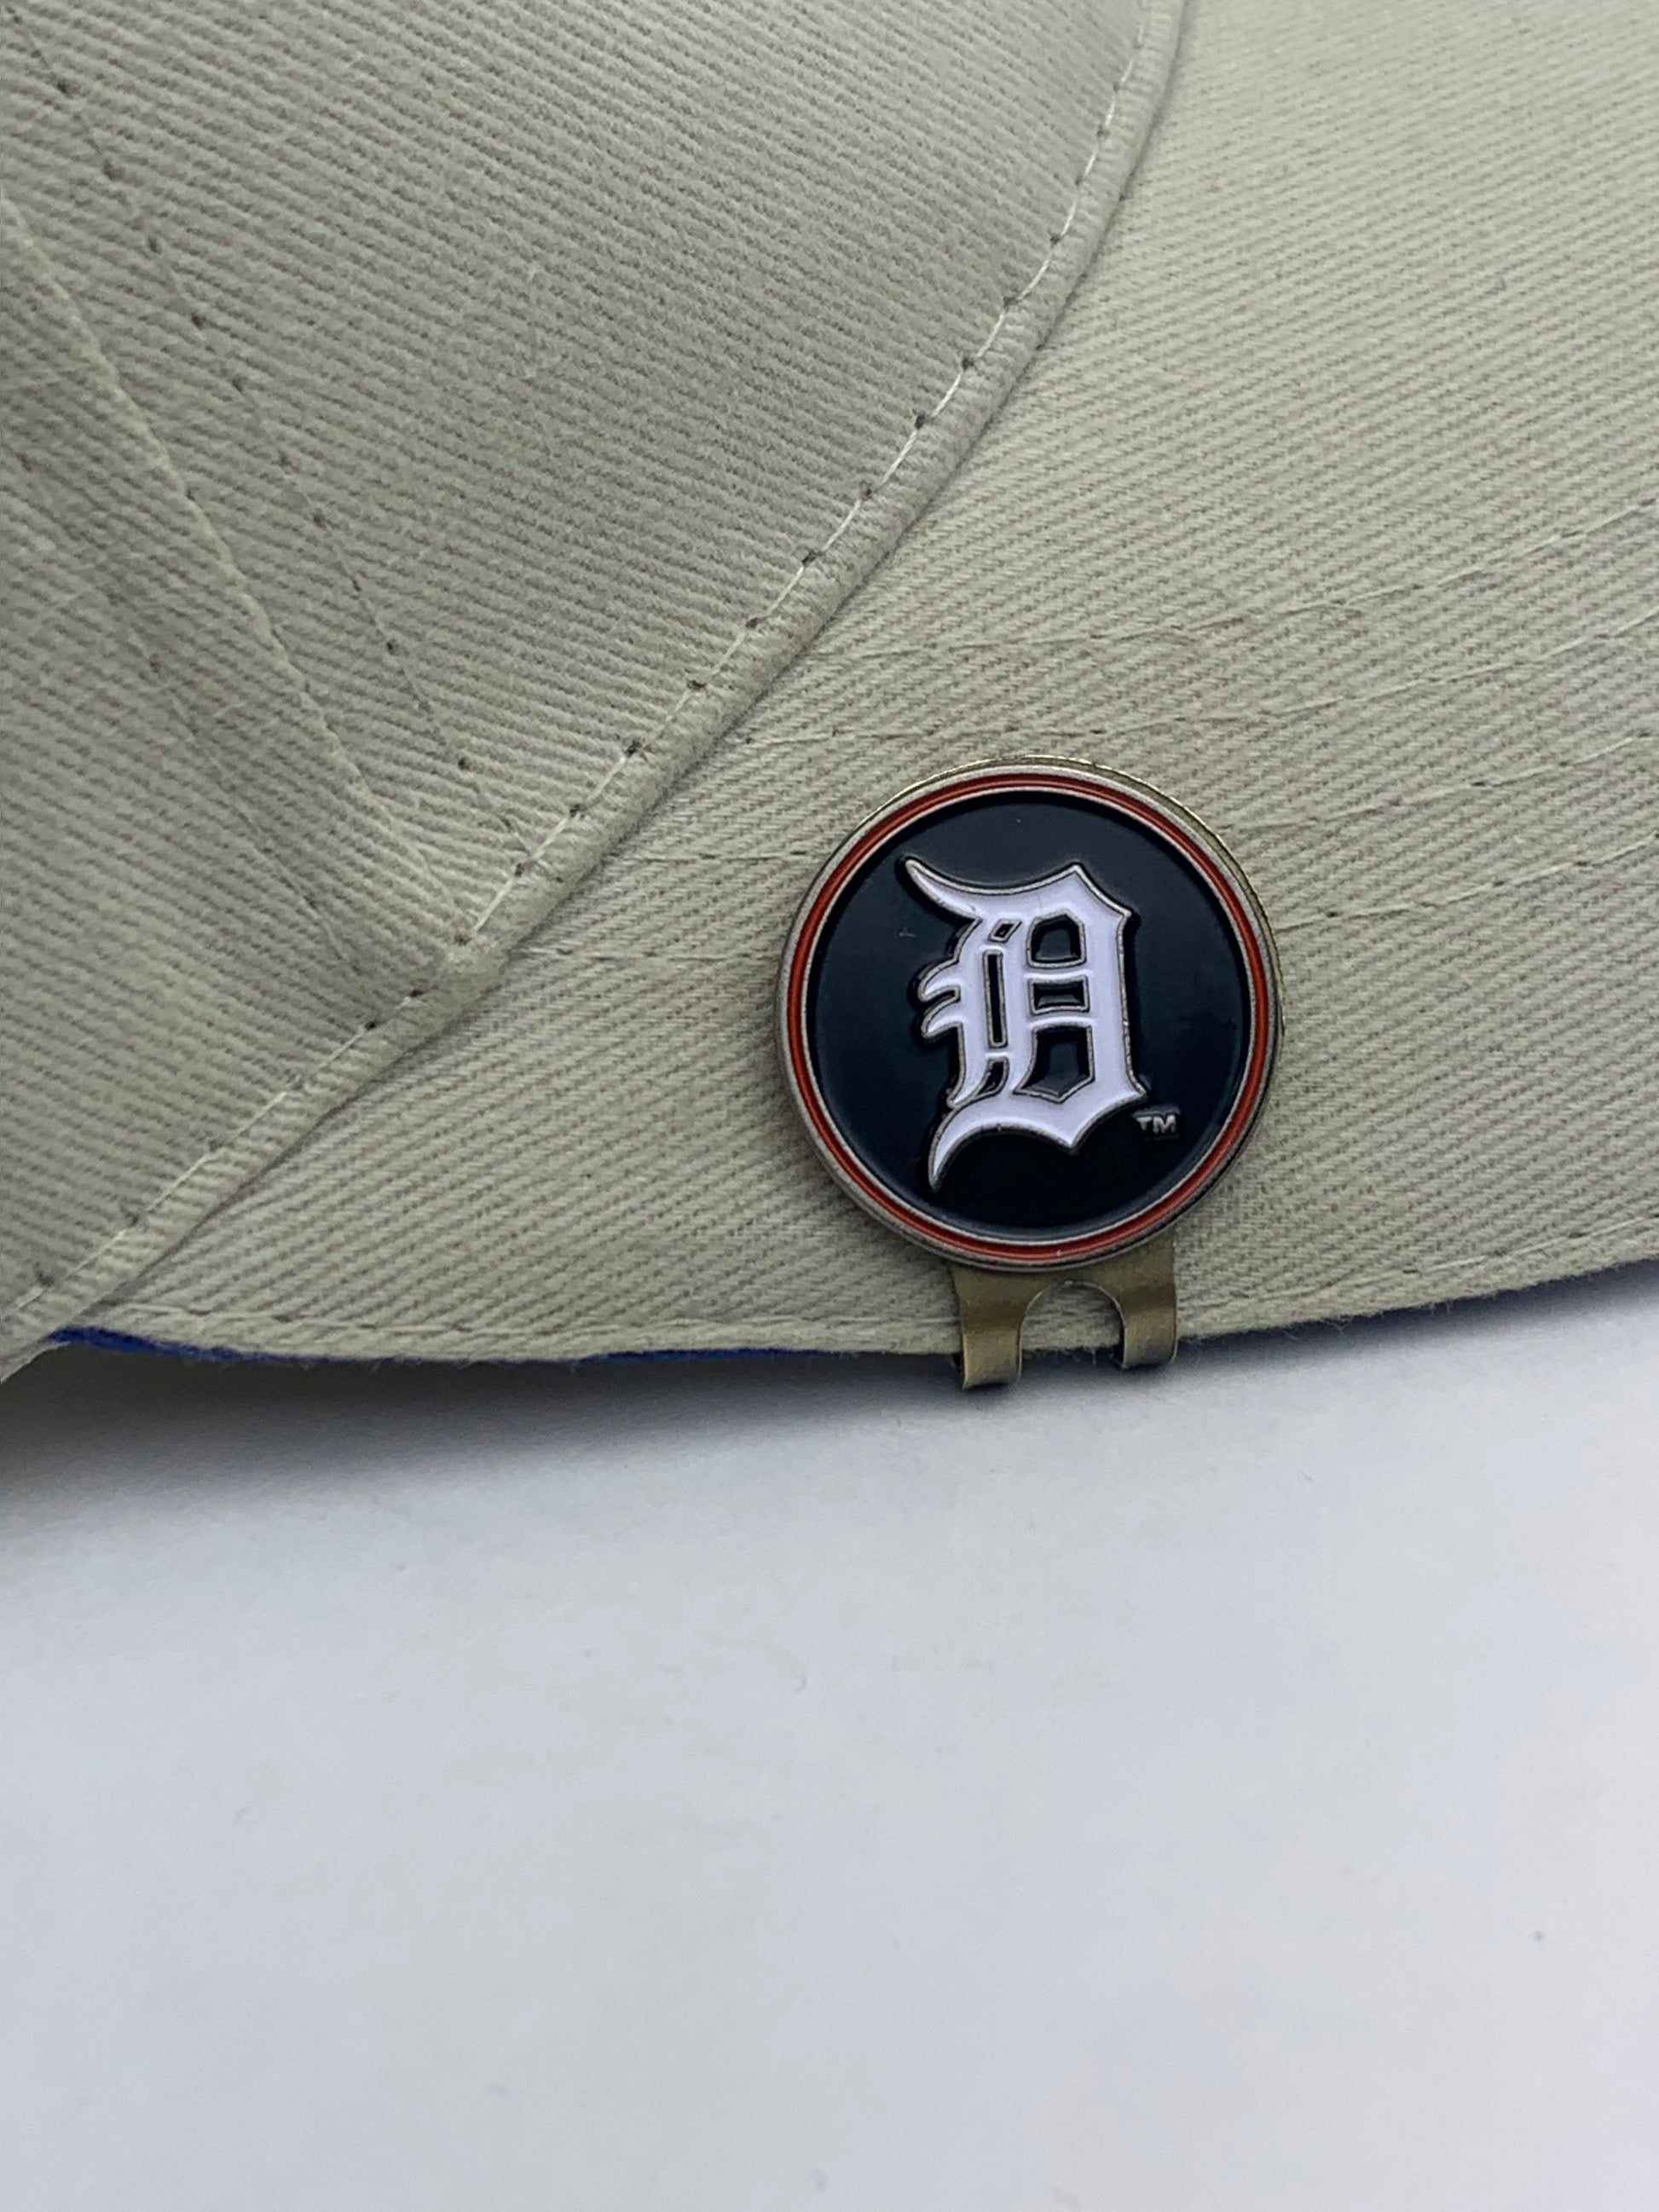 MLB Golf Ball Marker Hat Clip